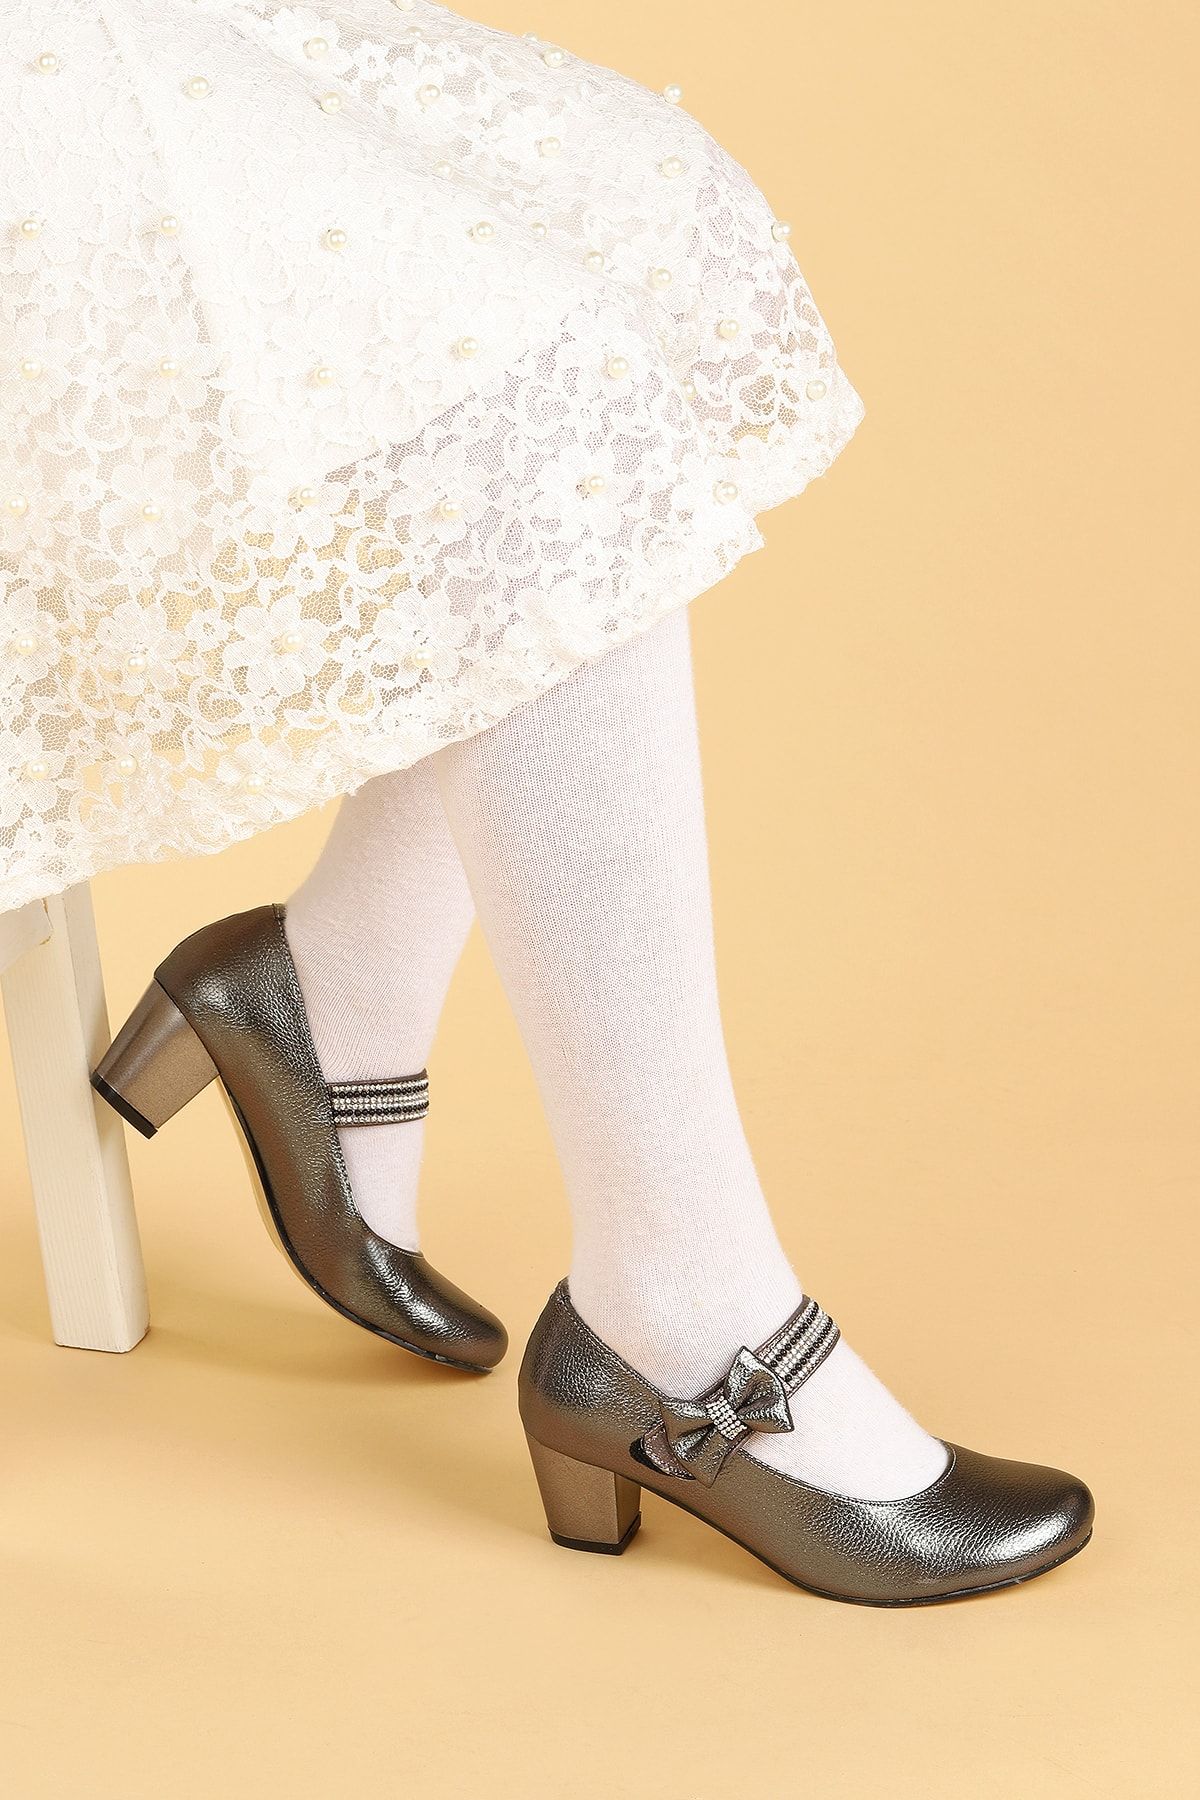 Kiko Kids Kız Çocuk Platin Renk Babet Ayakkabı